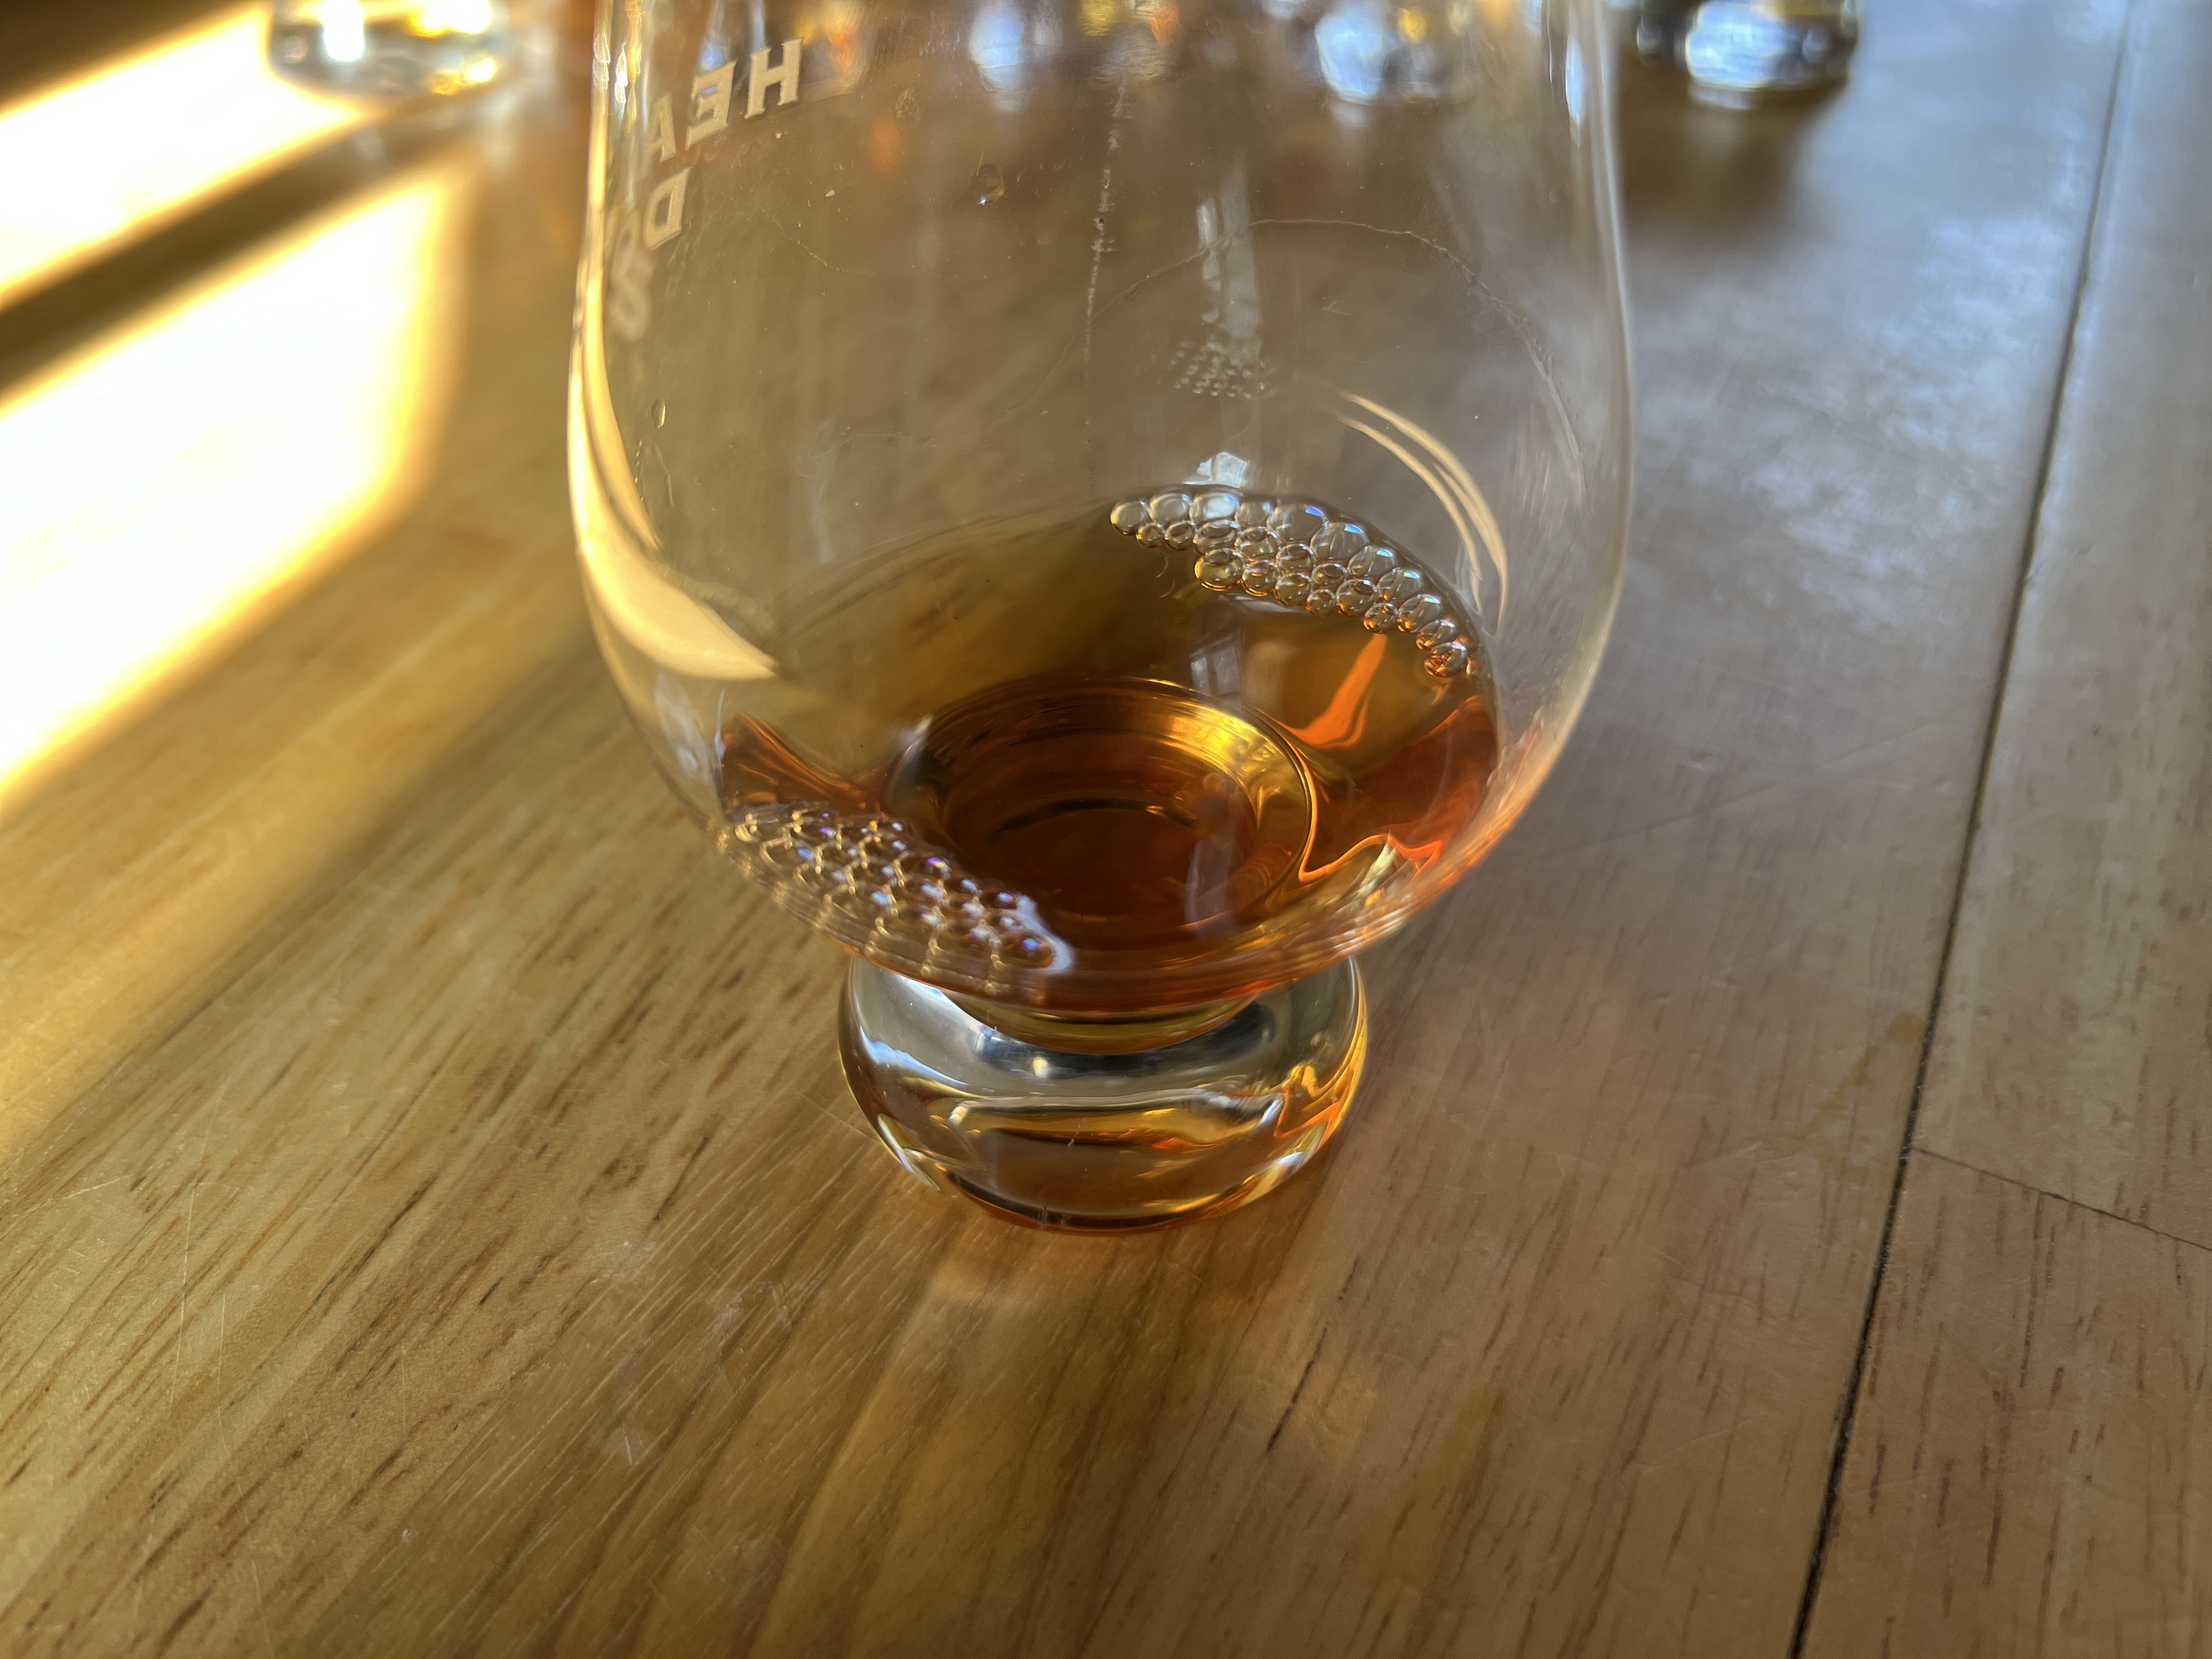 New Bourbon Blind Tasting